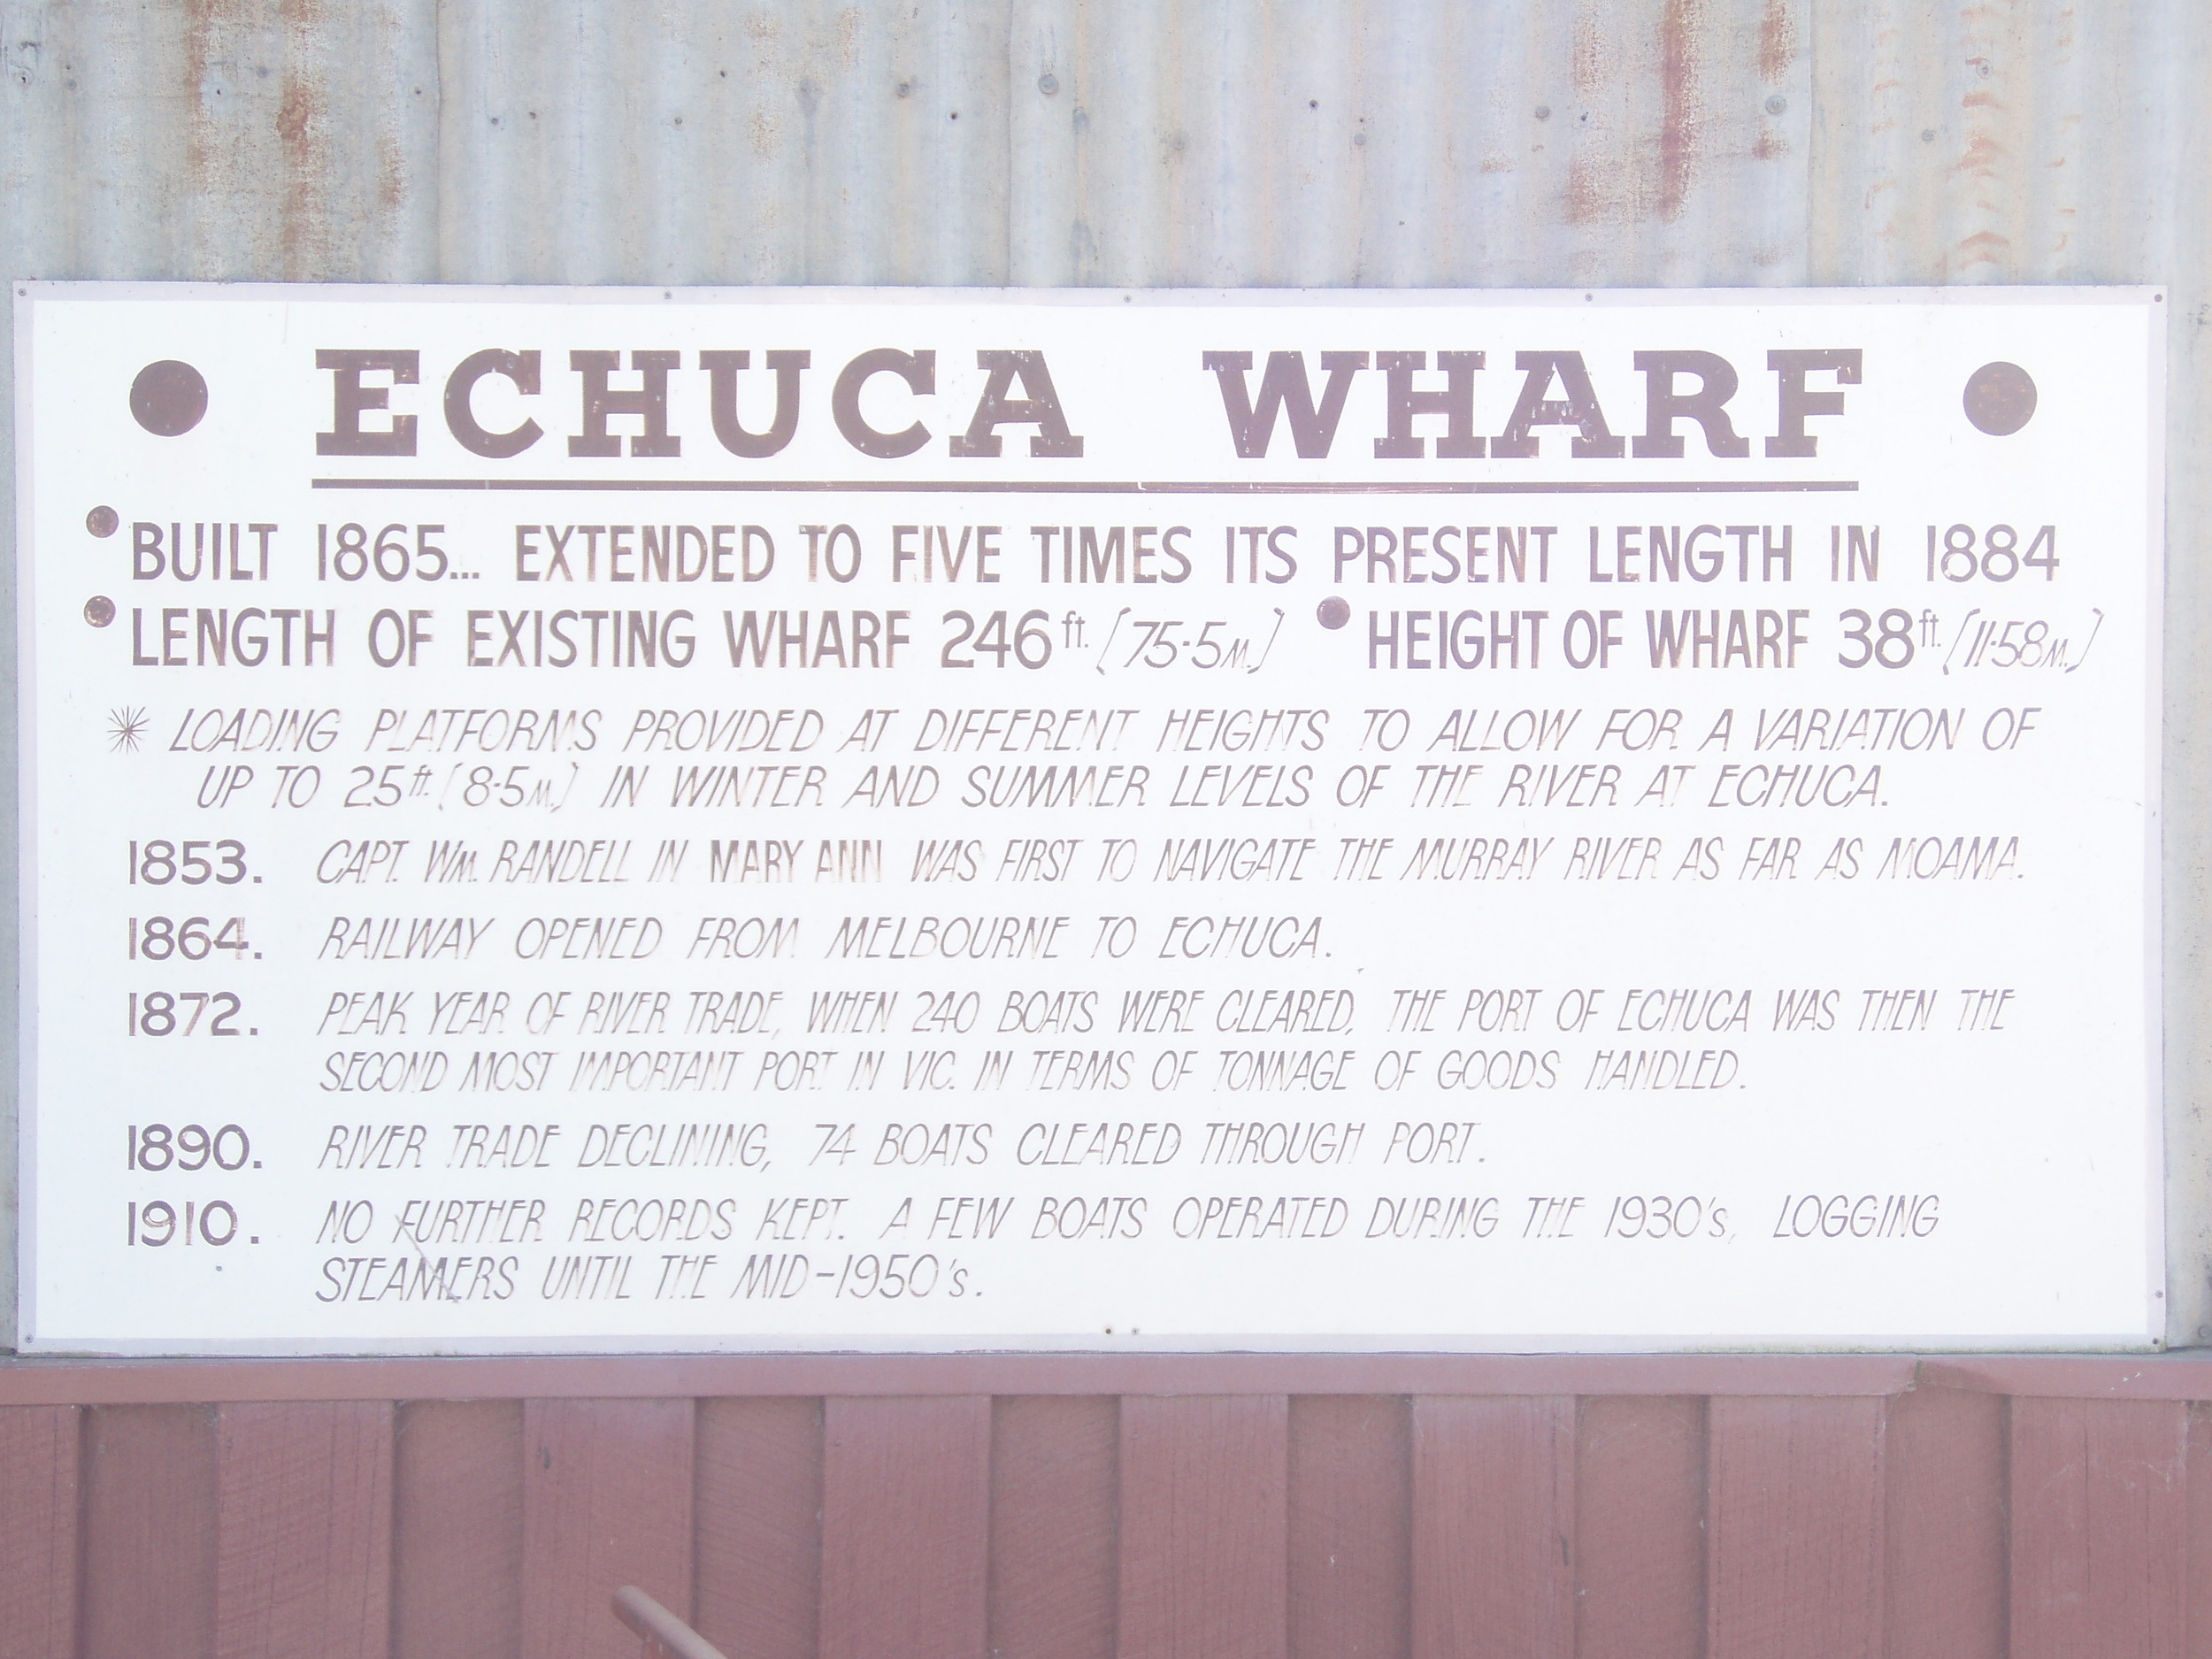  Port of Echuca 